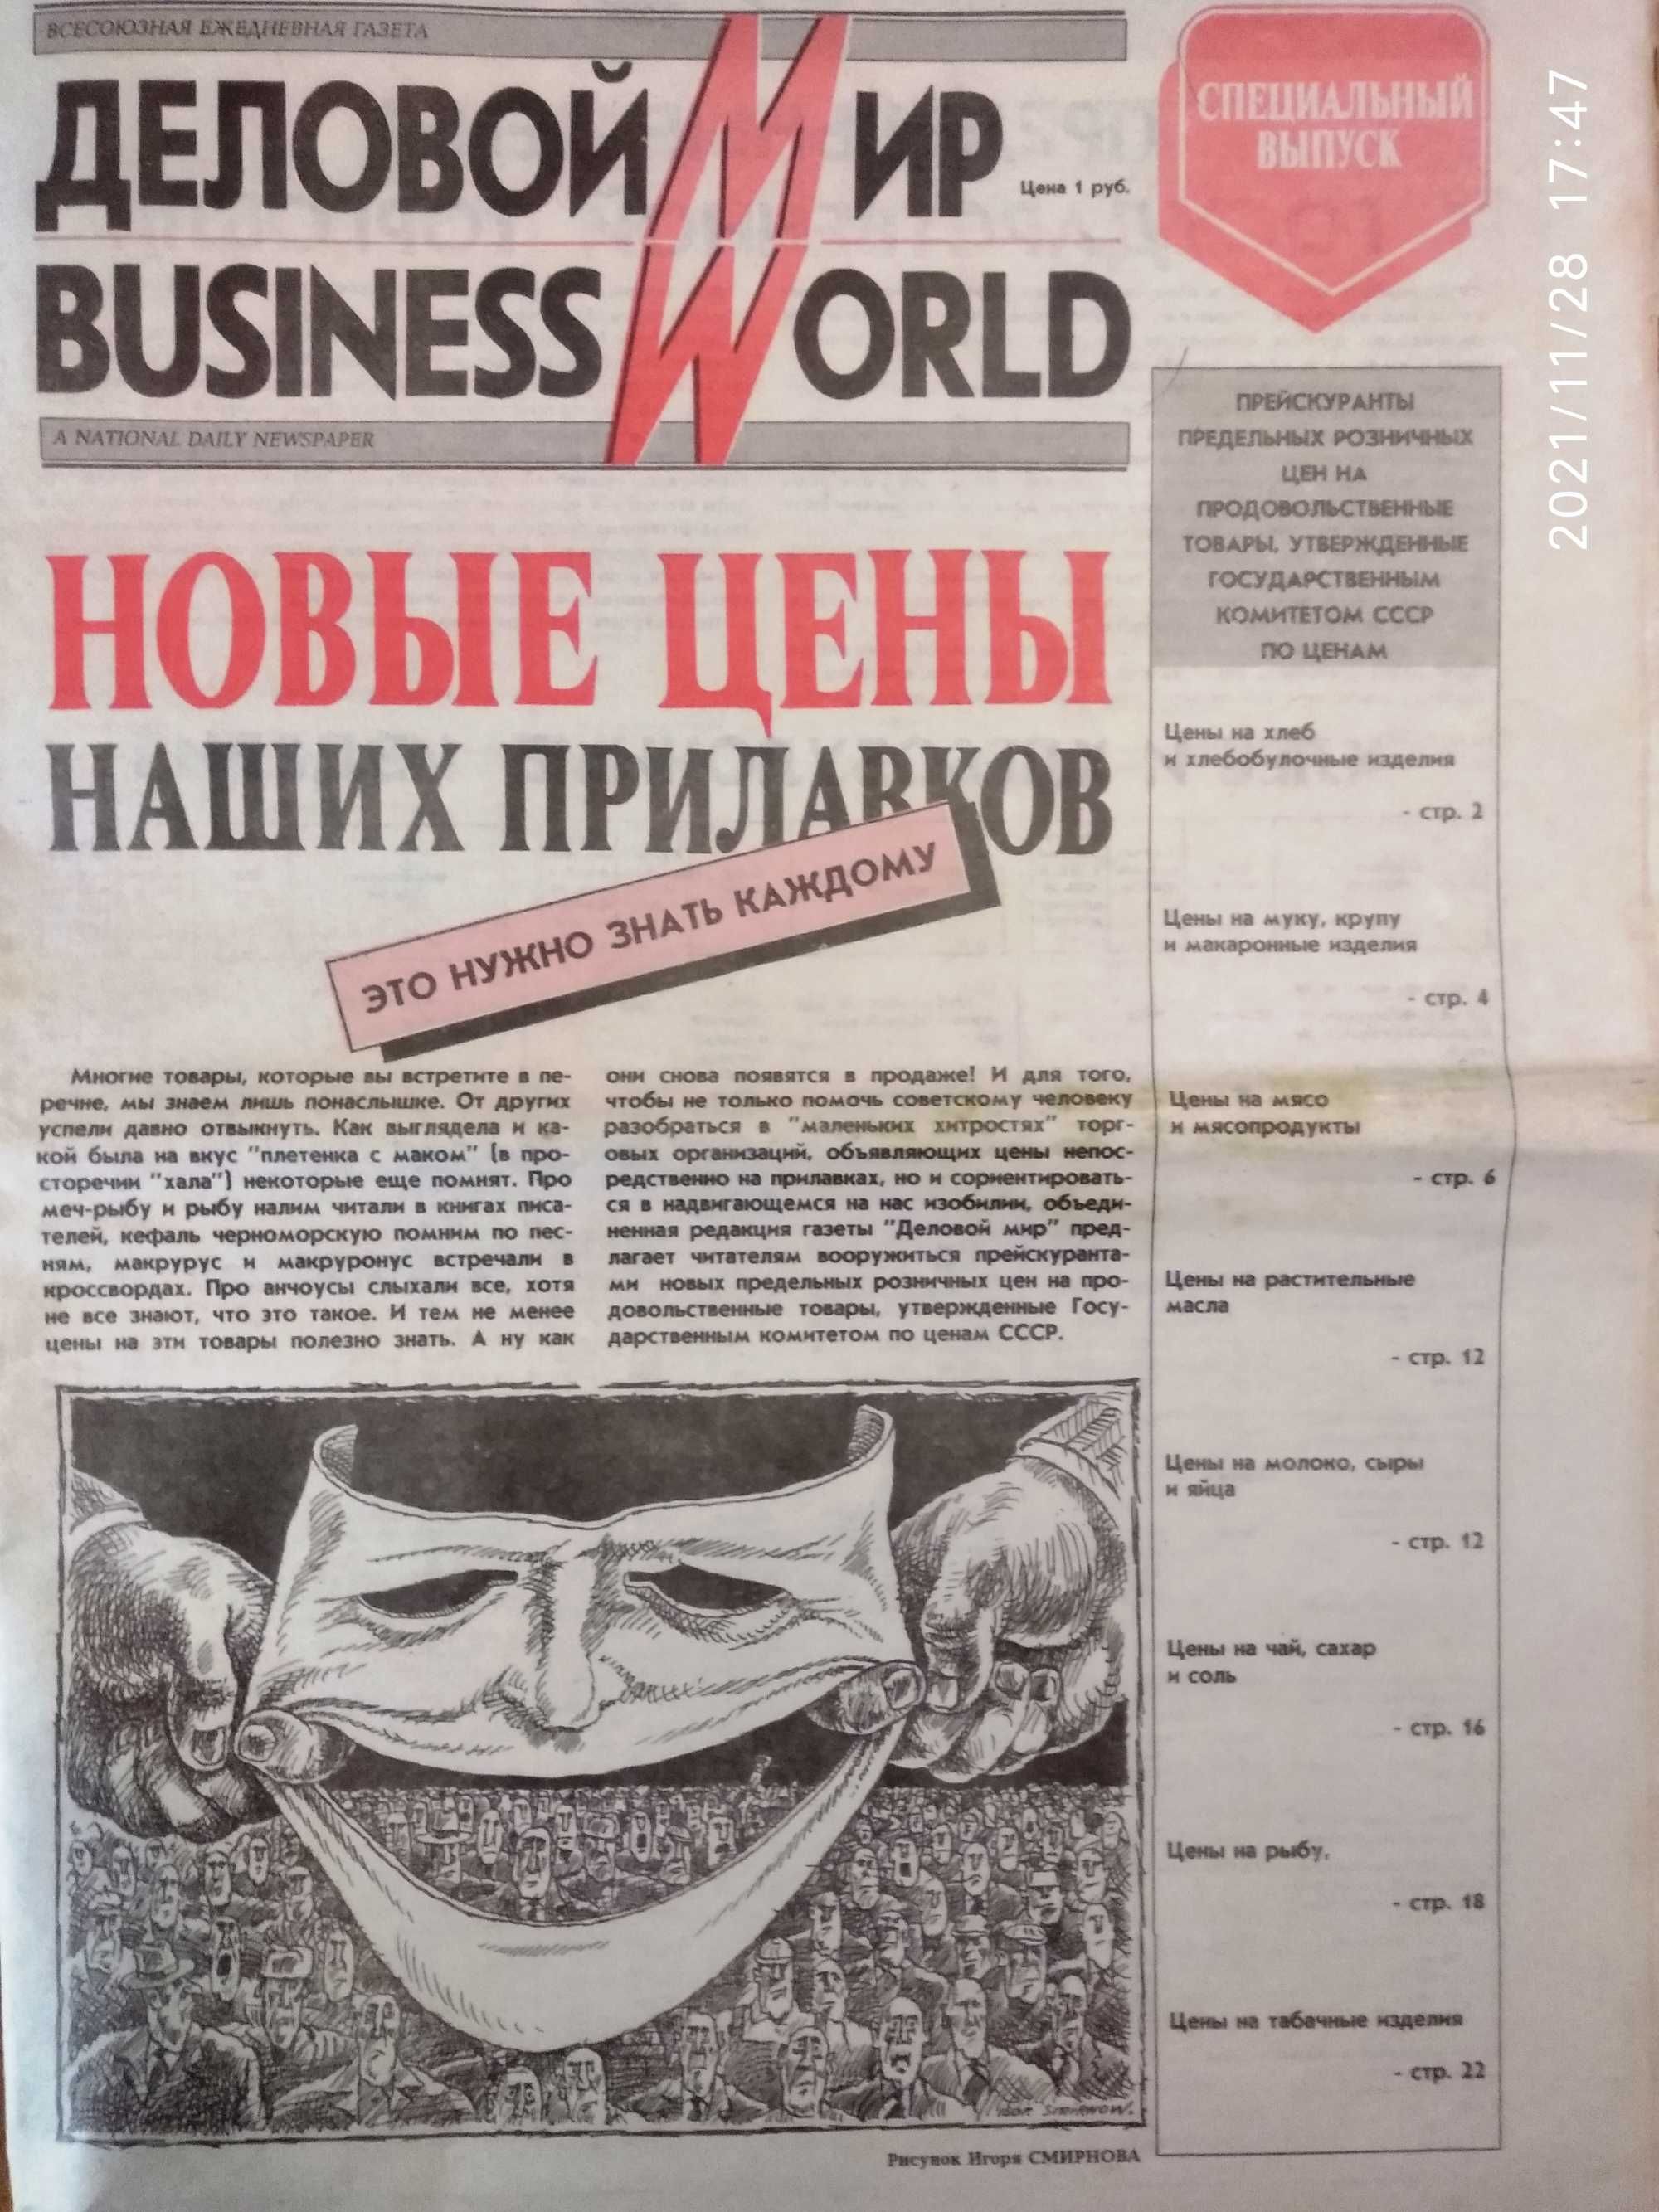 Периодическая  пресса -  подборка   публикаций   за 1991  год